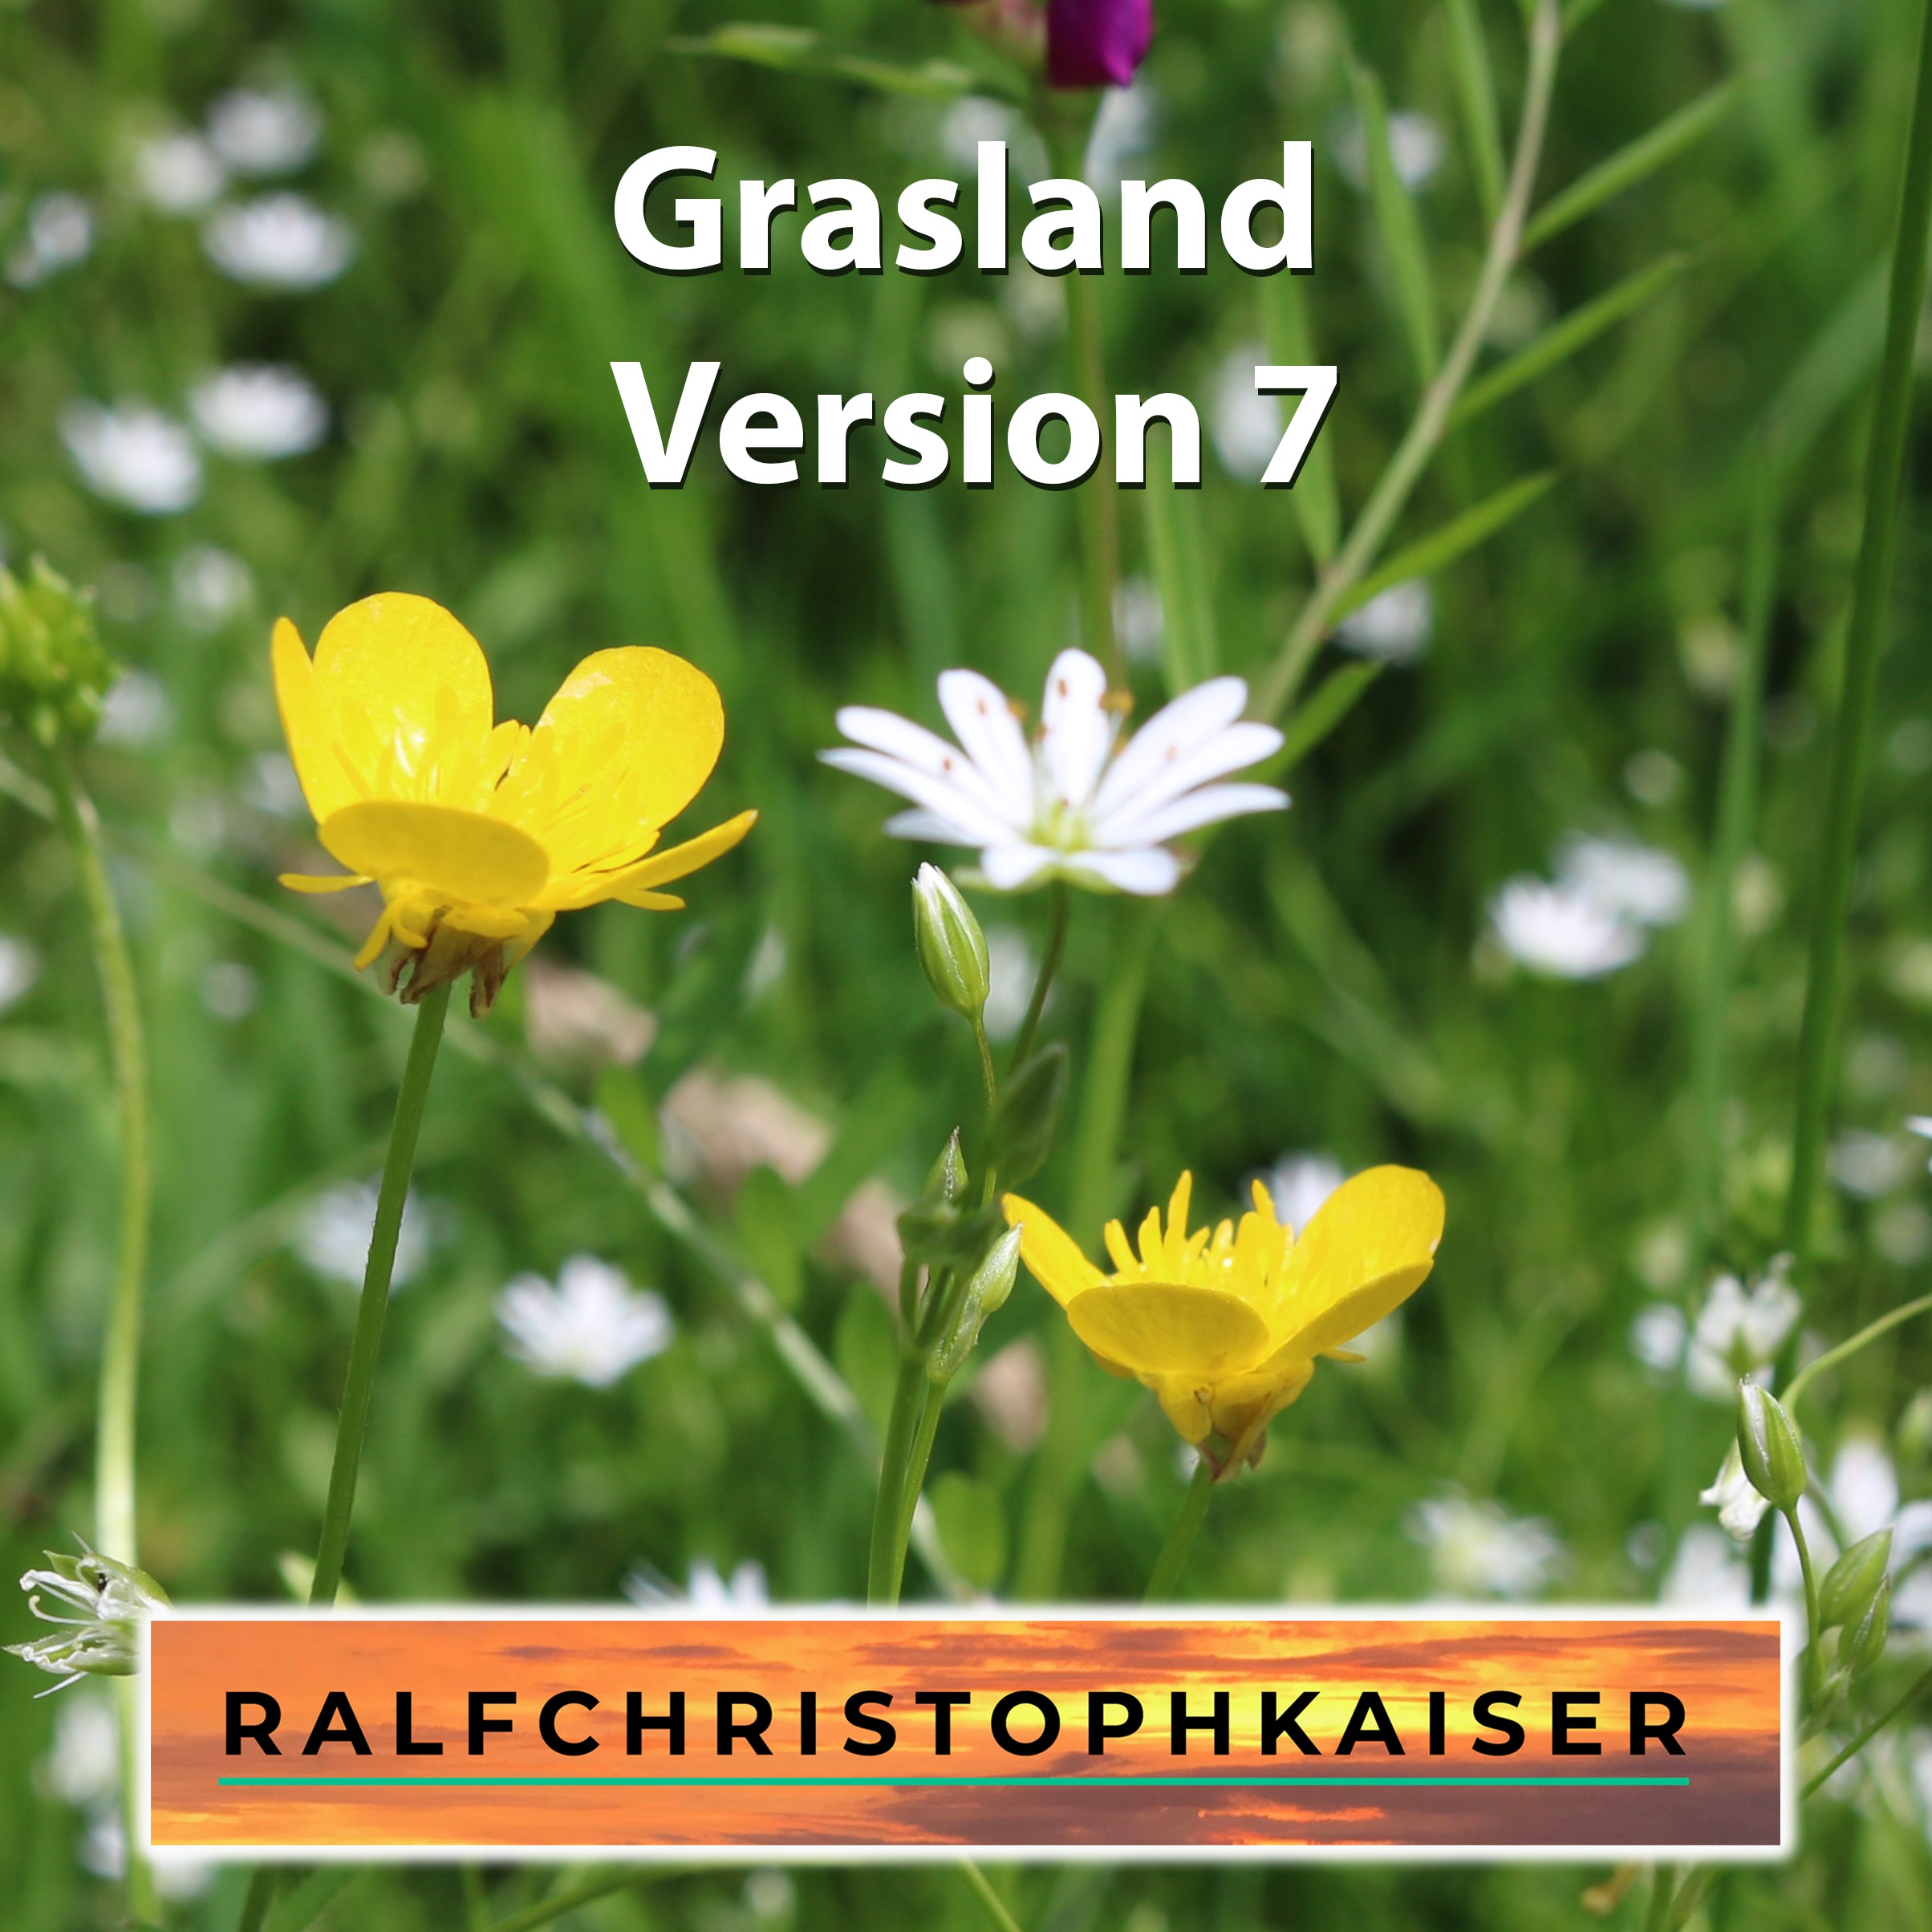 Grasland Version 7 high resolution wav file - ralfchristophkaiser.com Musik und Noten